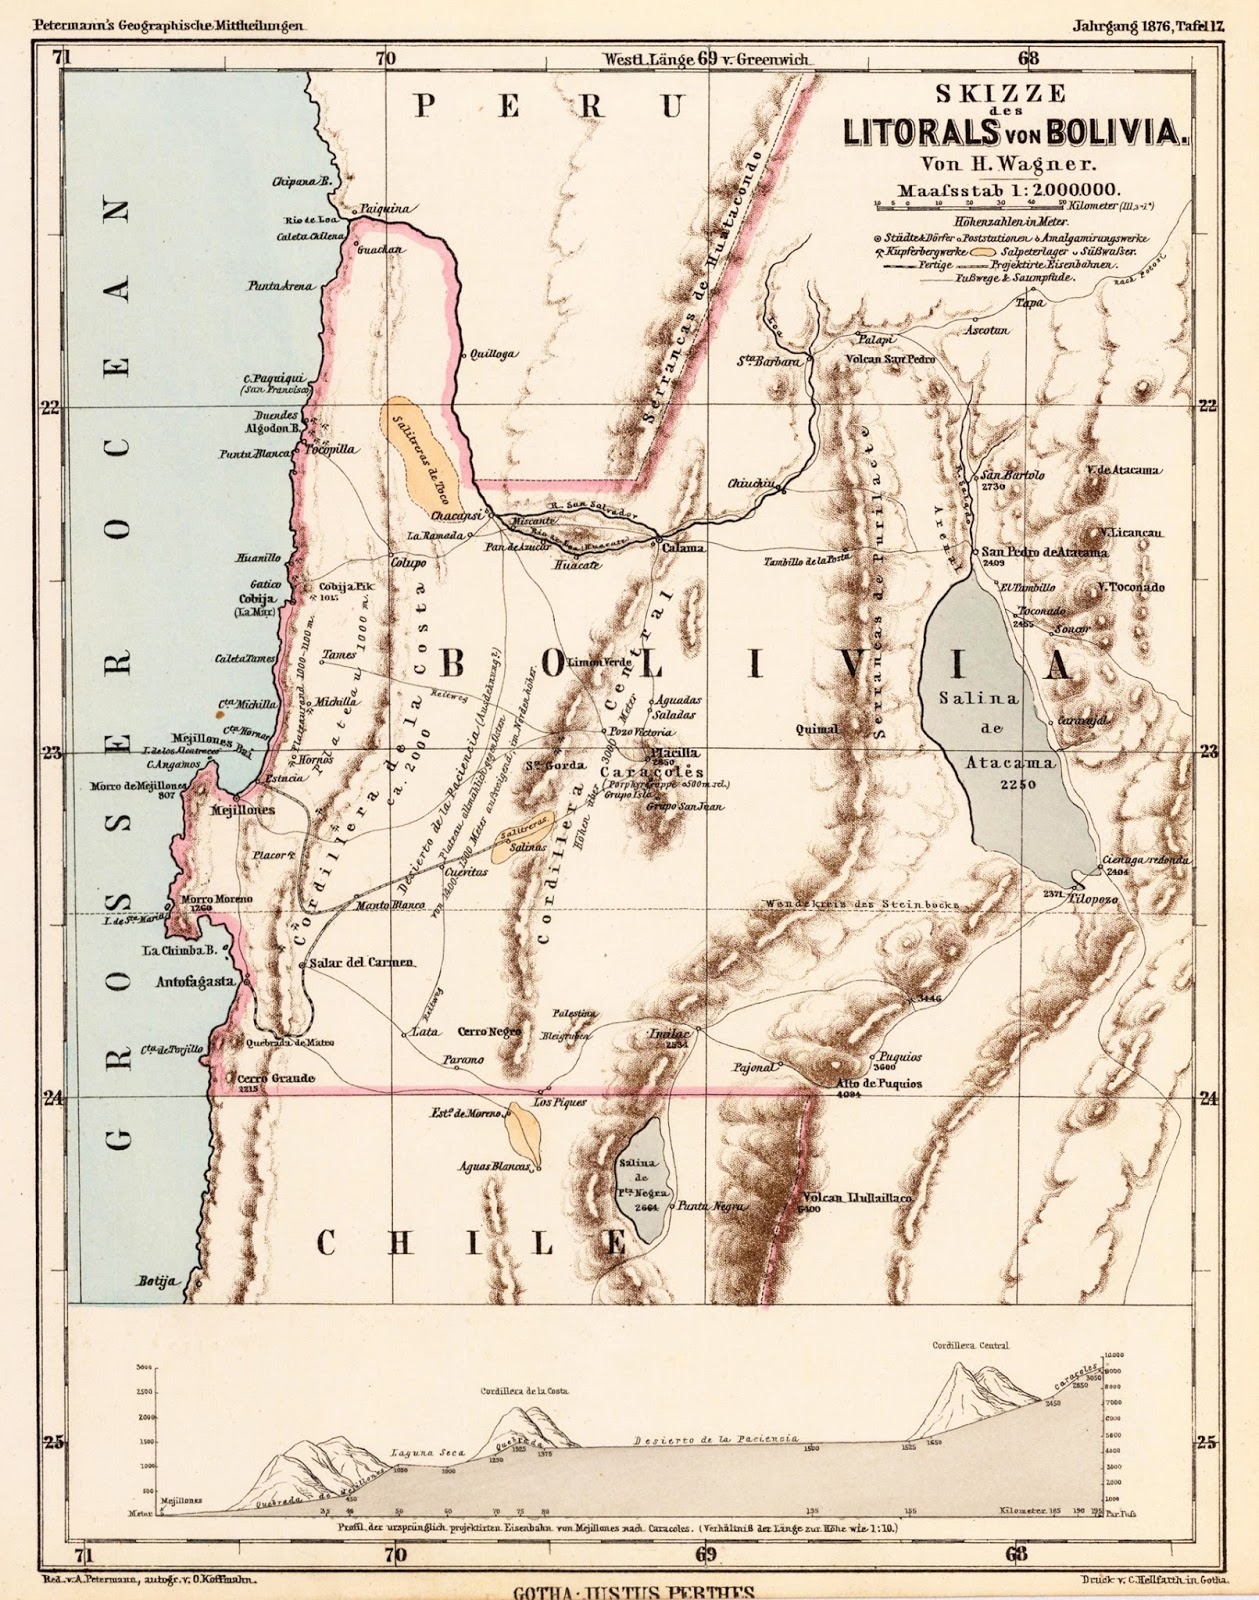 Mapa del Litoral de Bolivia en 1876